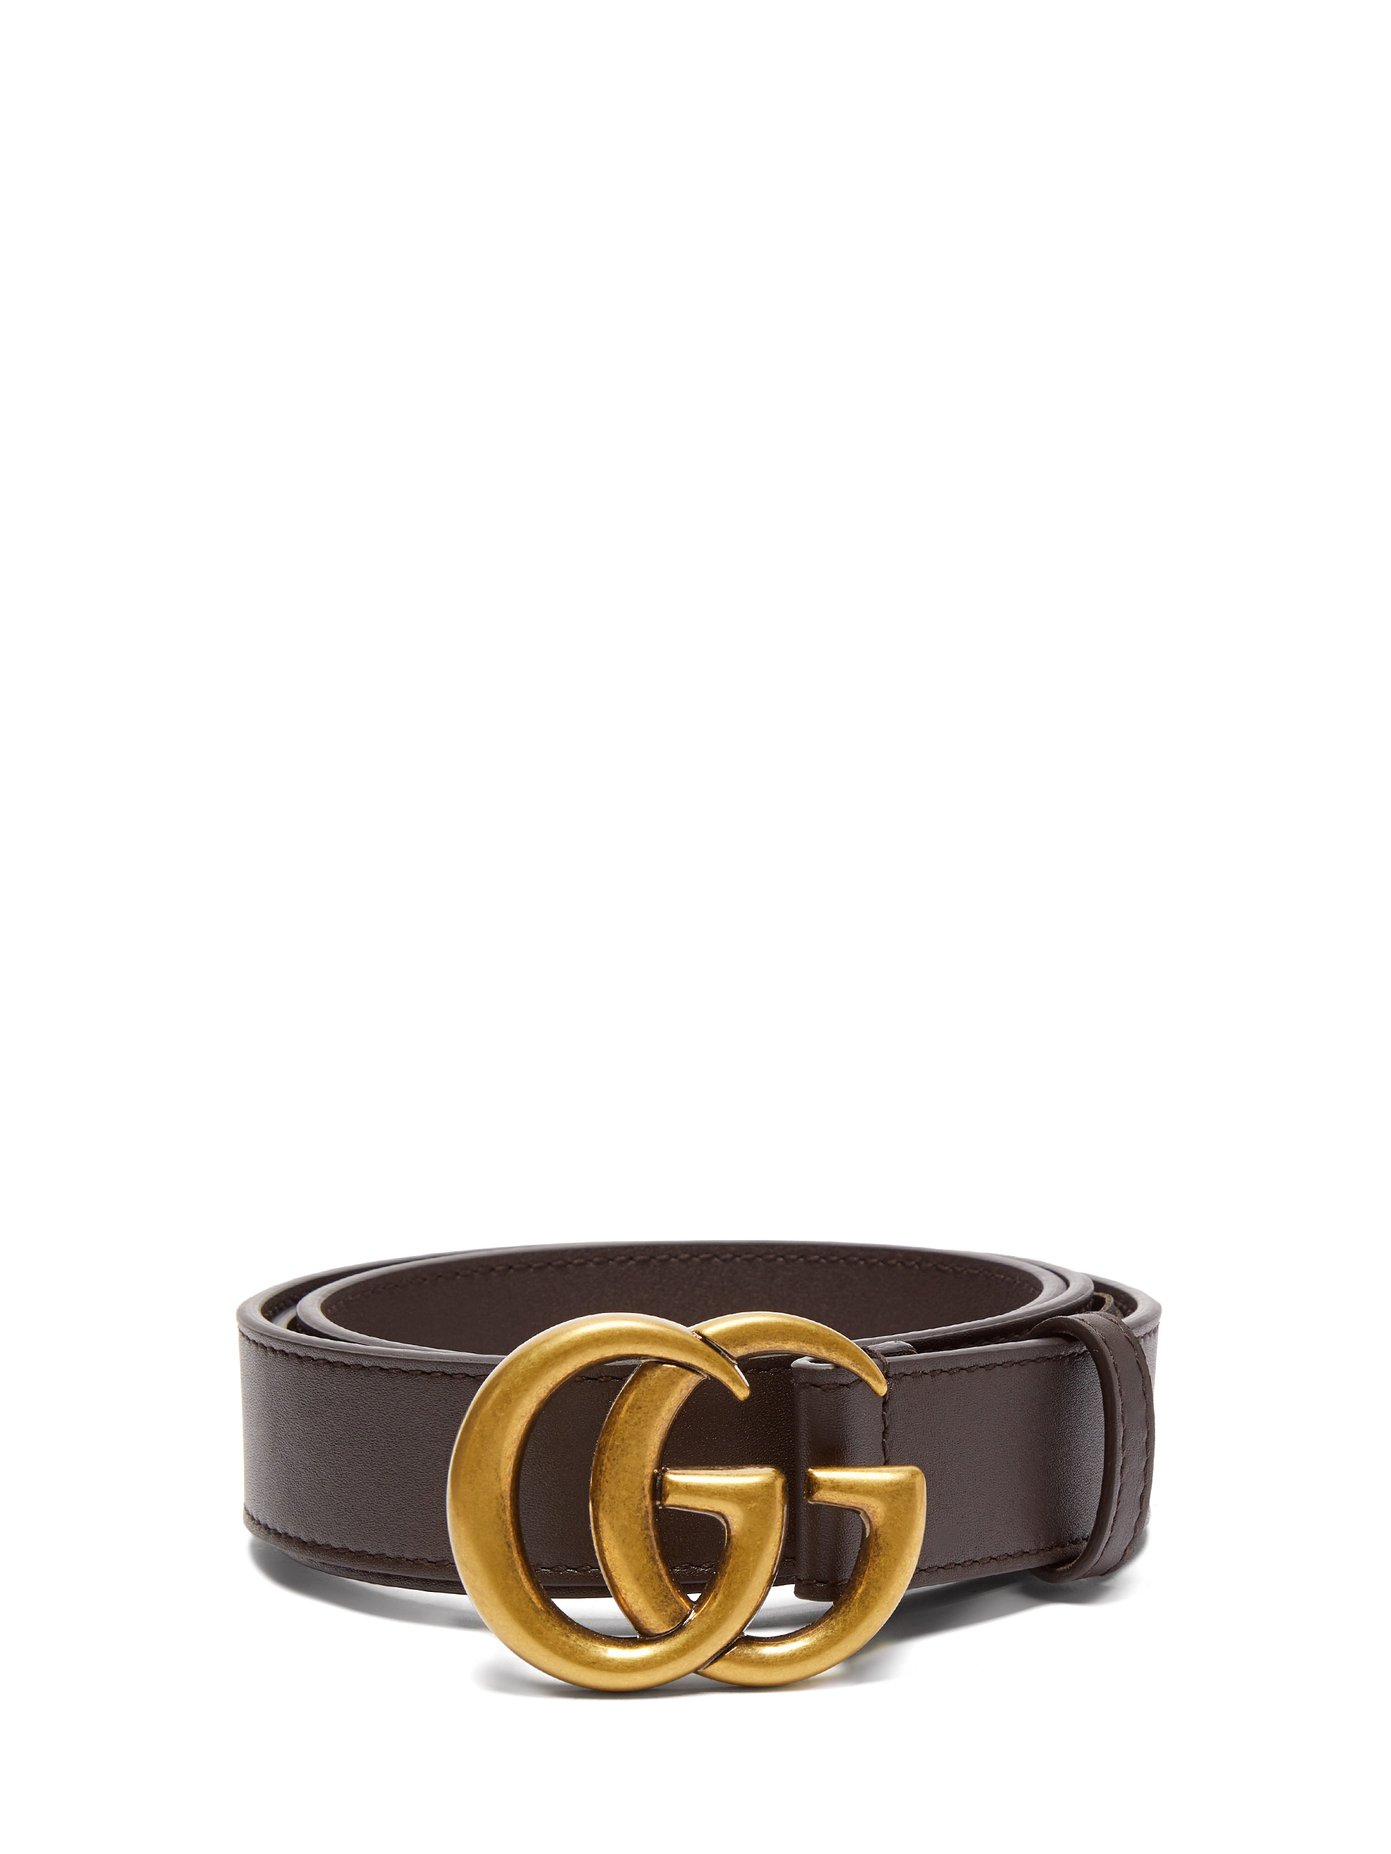 GG leather belt | Gucci | MATCHESFASHION US